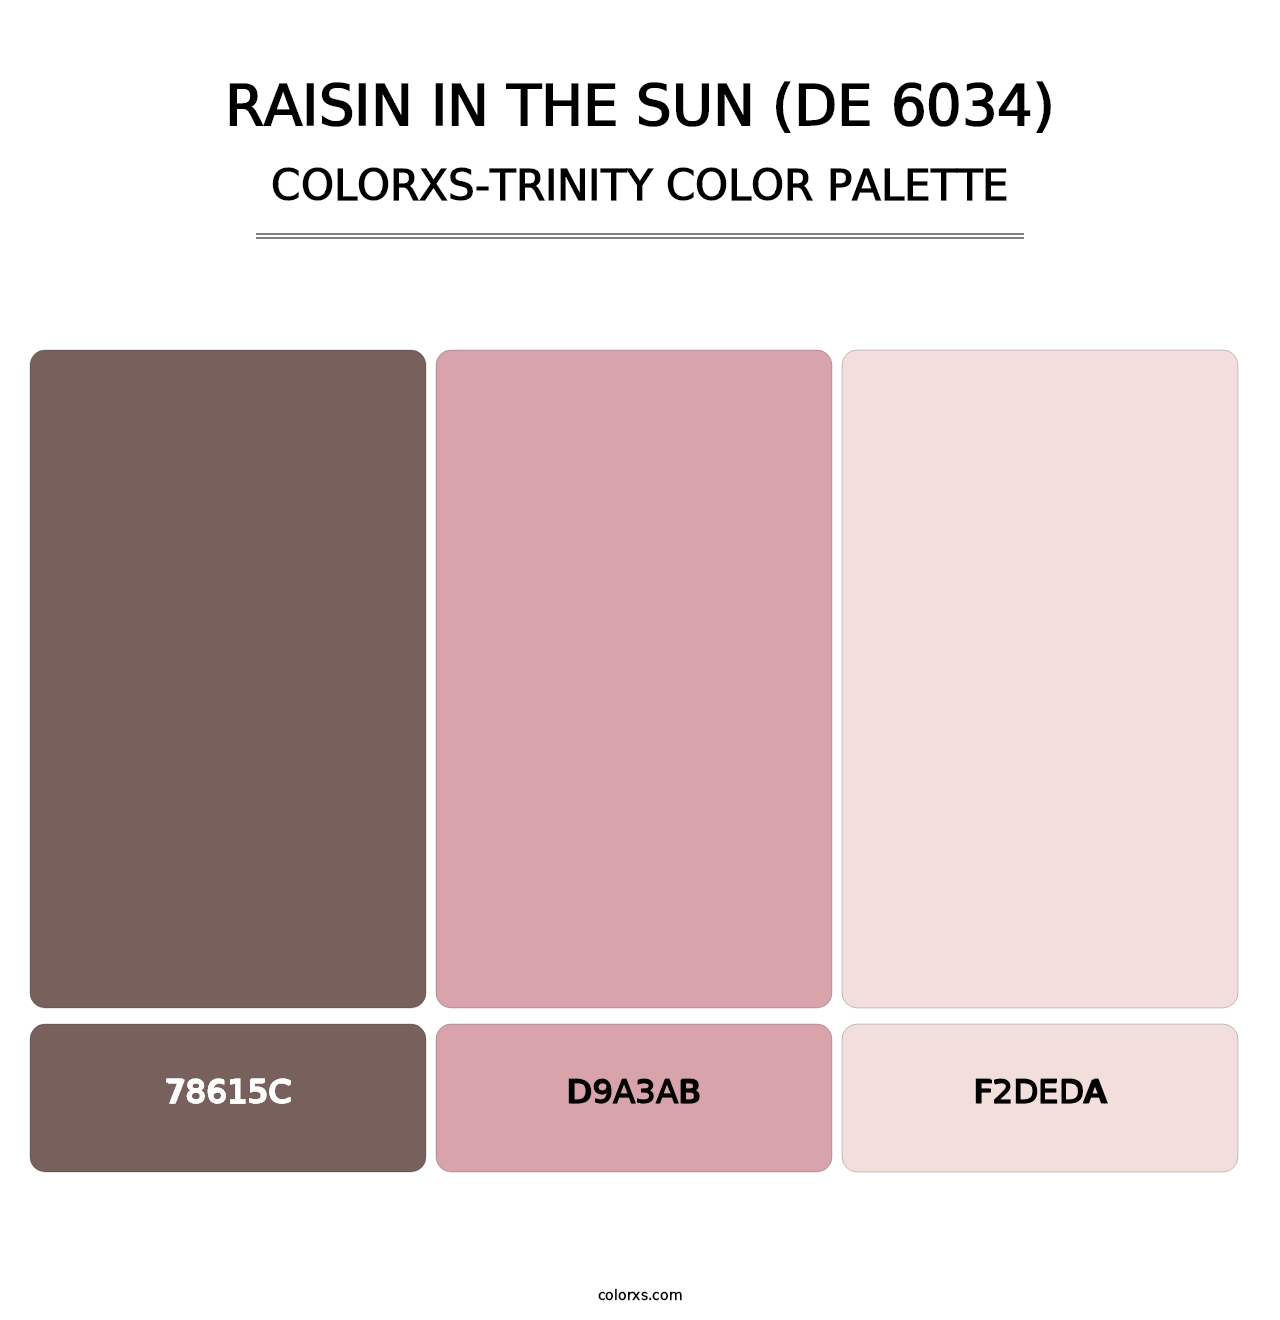 Raisin in the Sun (DE 6034) - Colorxs Trinity Palette